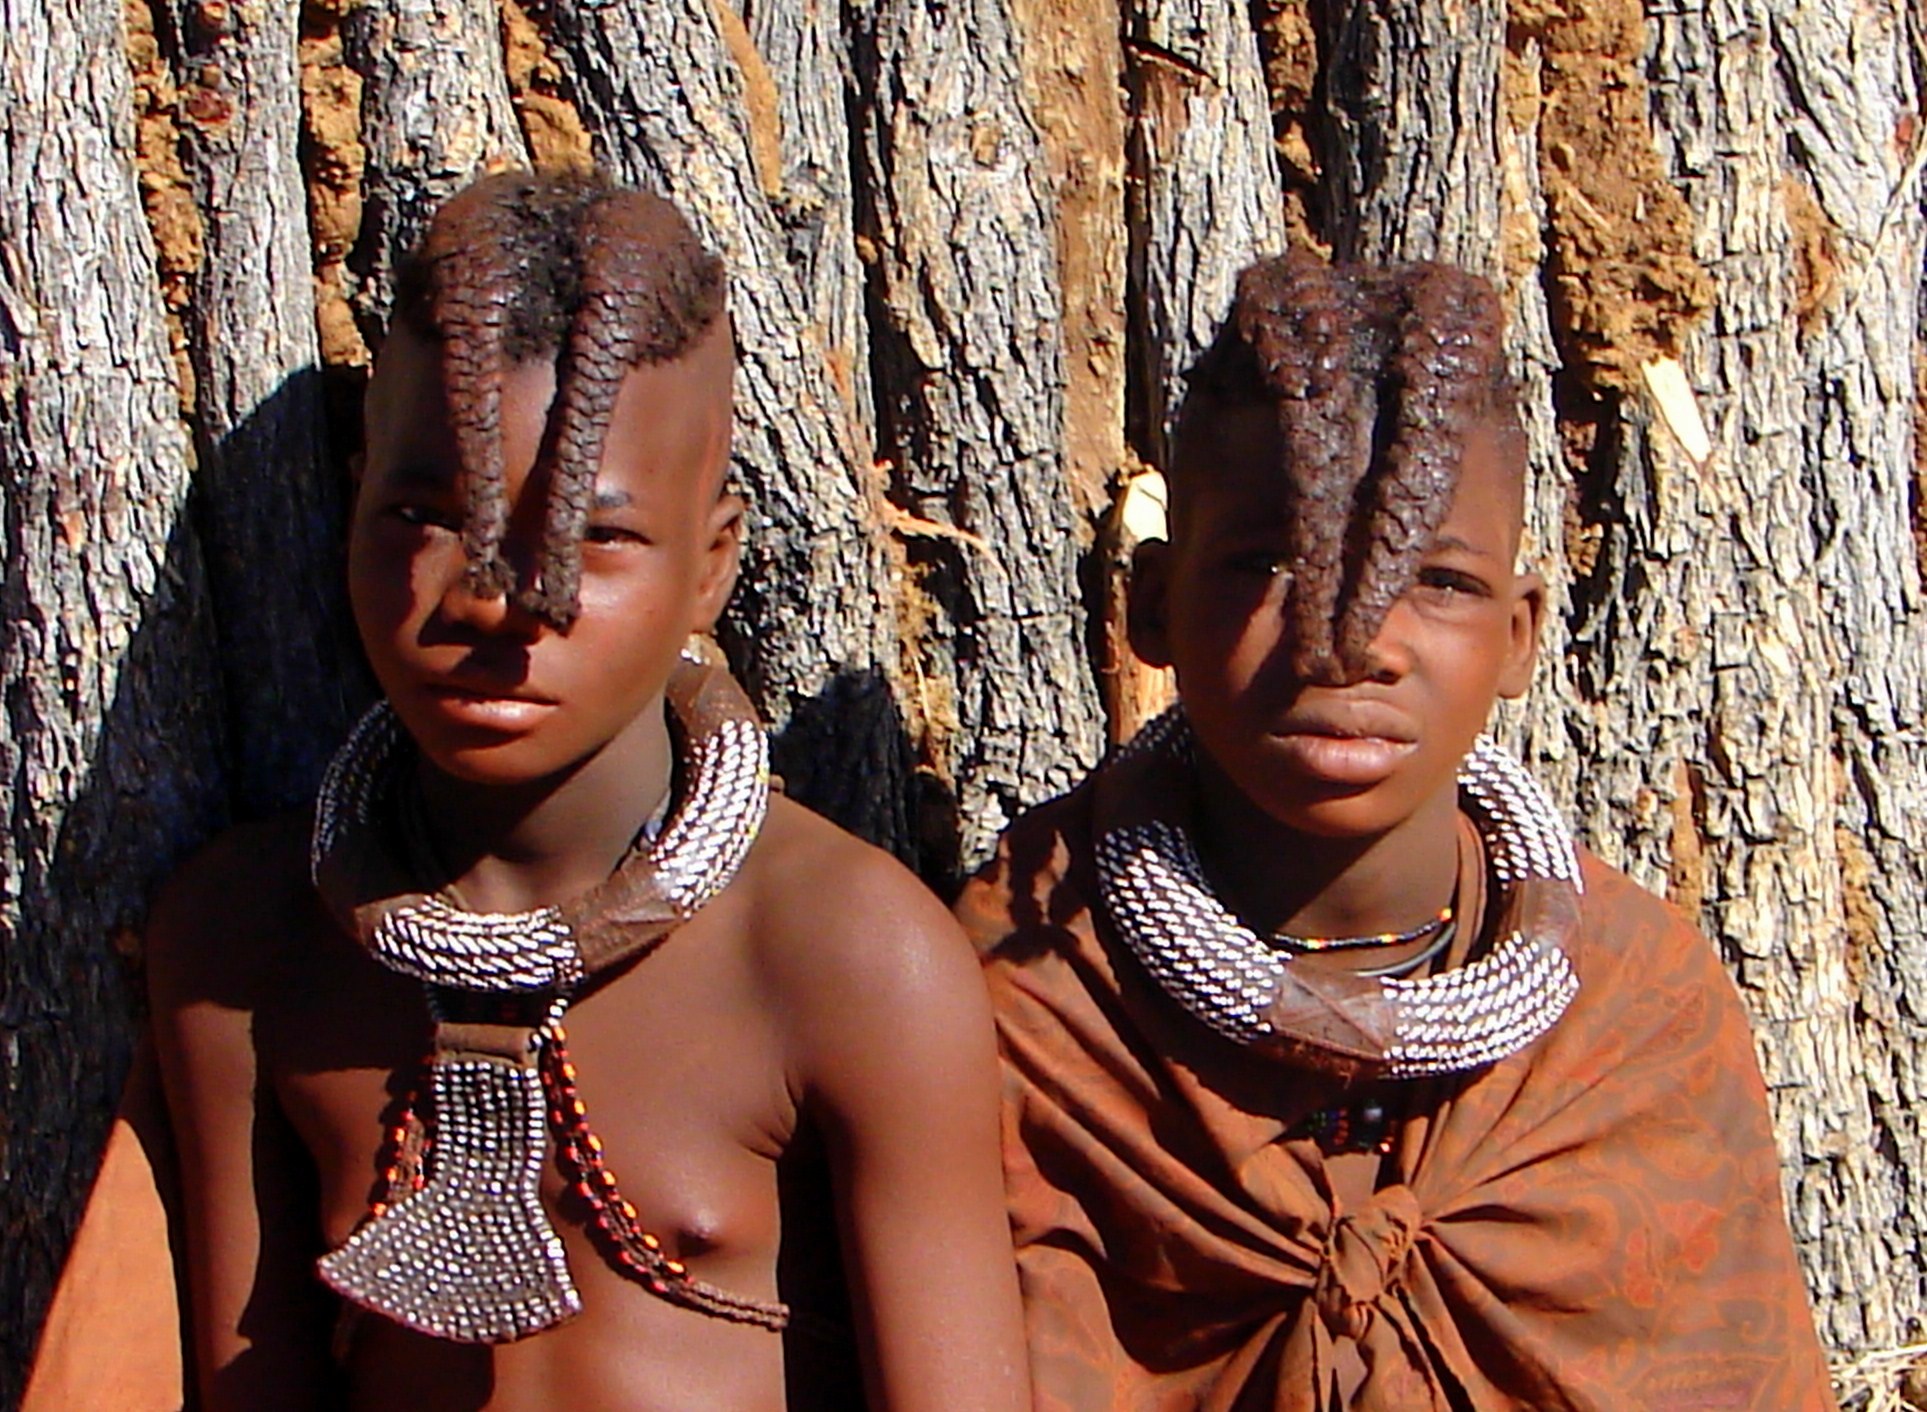 Children in Namibia...